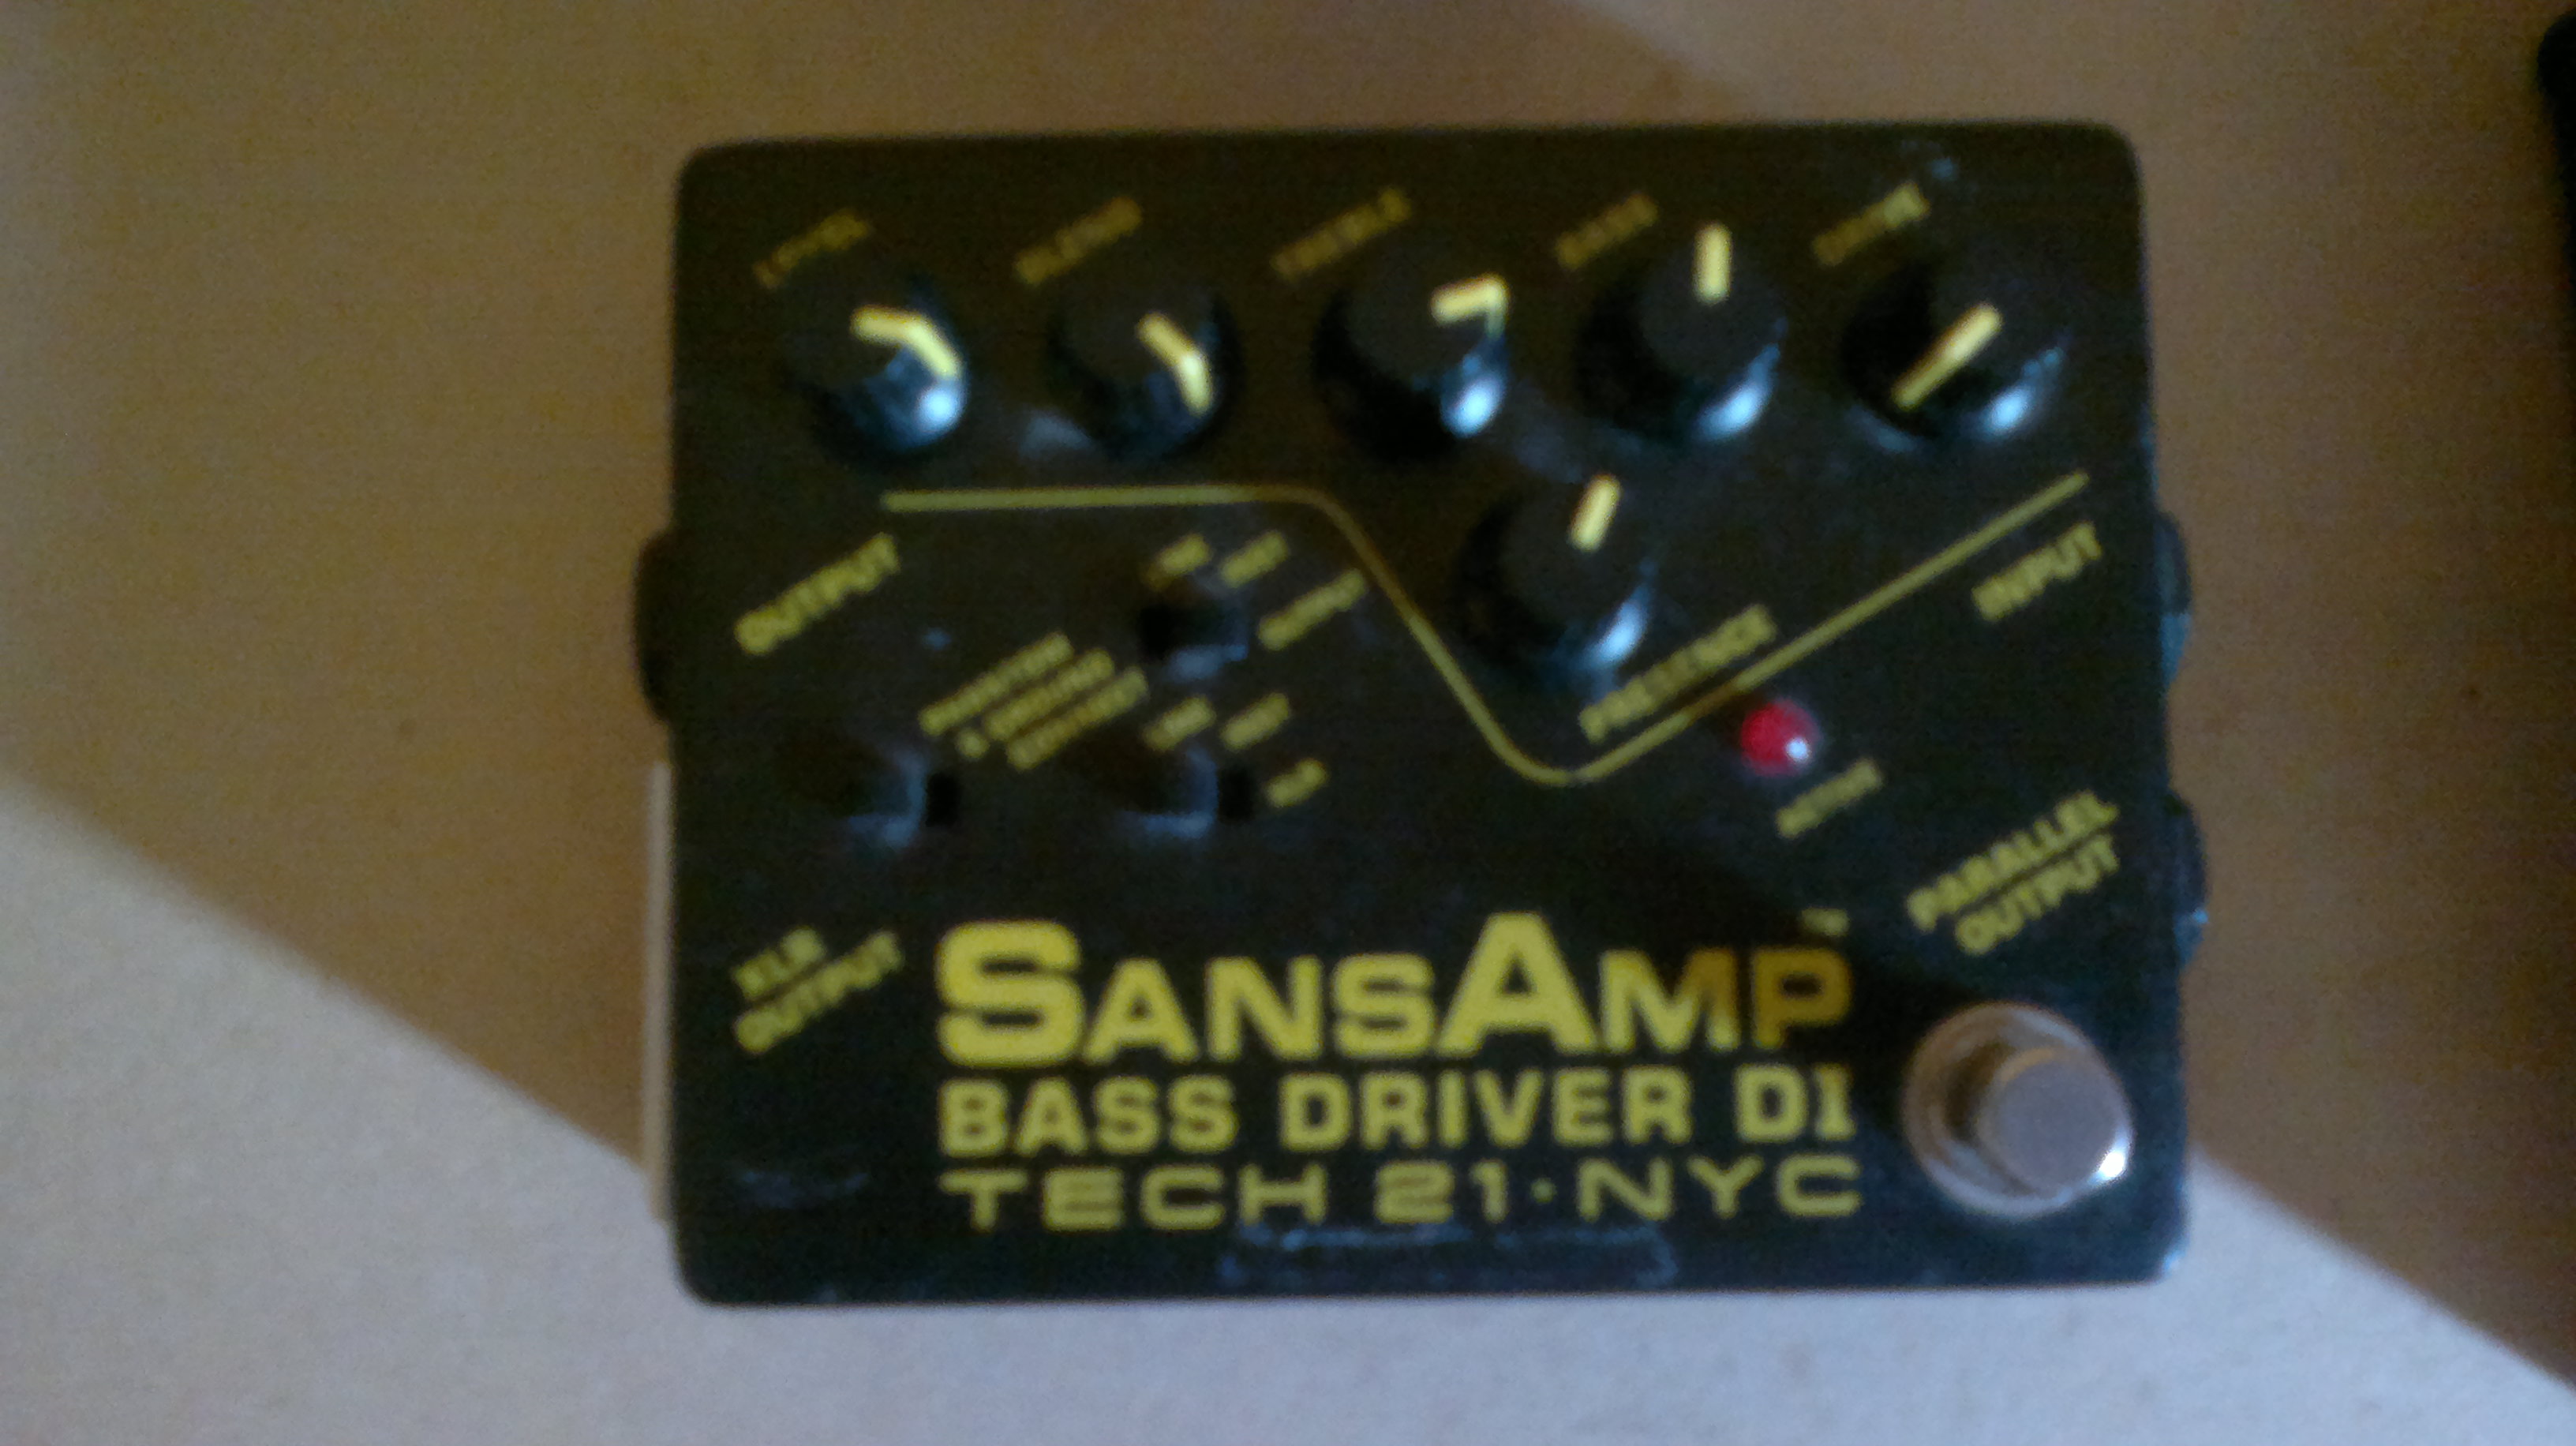 SANSAMP BASS DRIVER DI - Tech 21 SansAmp Bass Driver DI - Audiofanzine